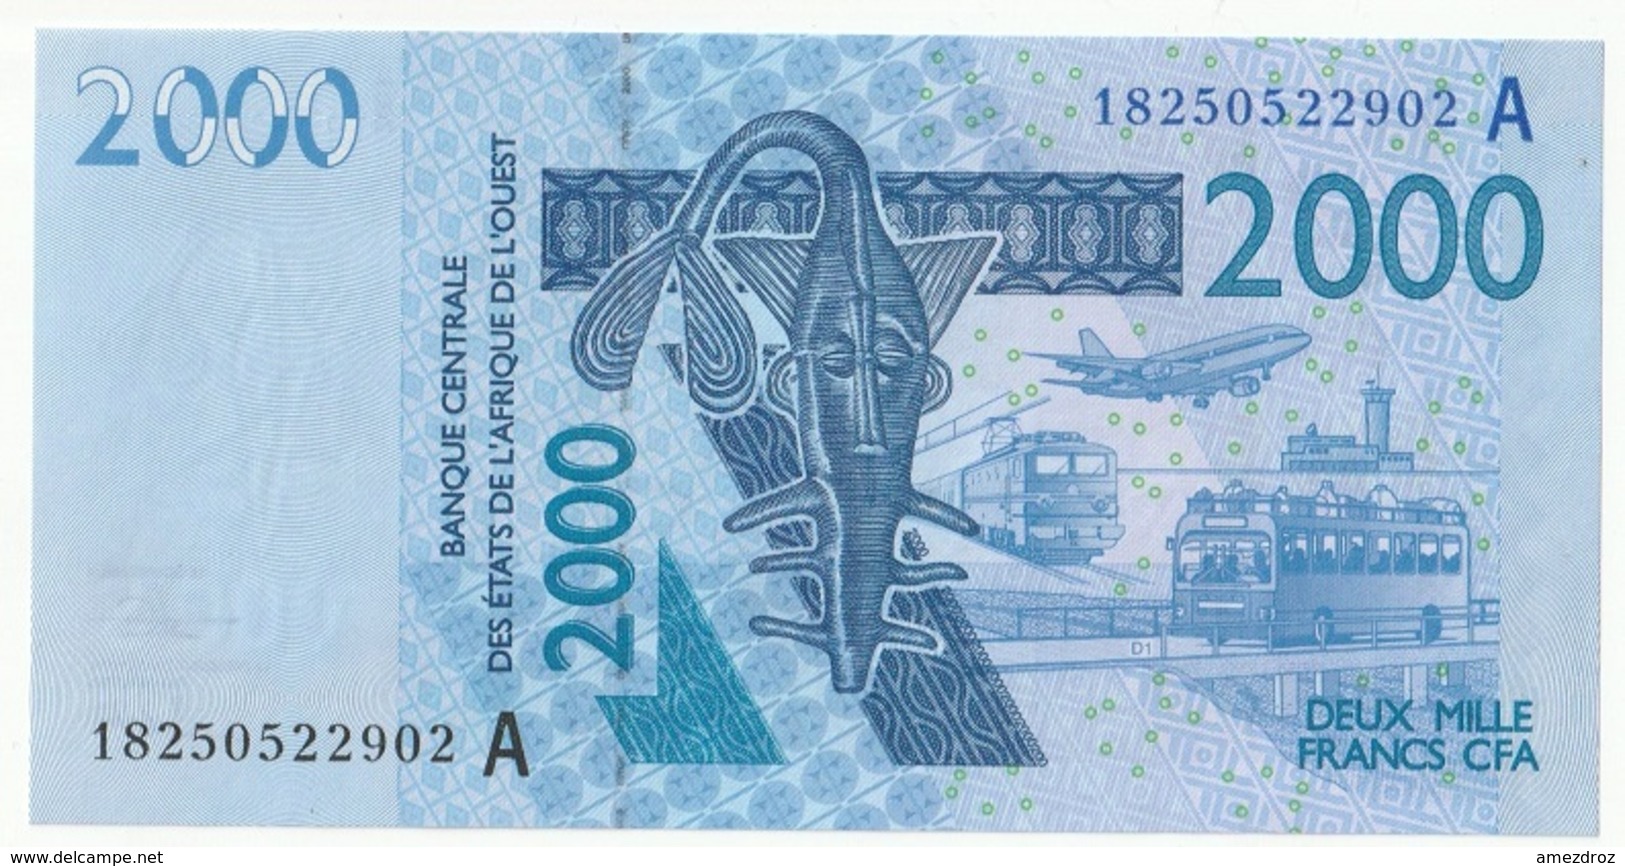 Billet De 2000 Francs CFA XOF Non Circulé Afrique De L'Ouest Origine Cote D'Ivoire - Côte D'Ivoire